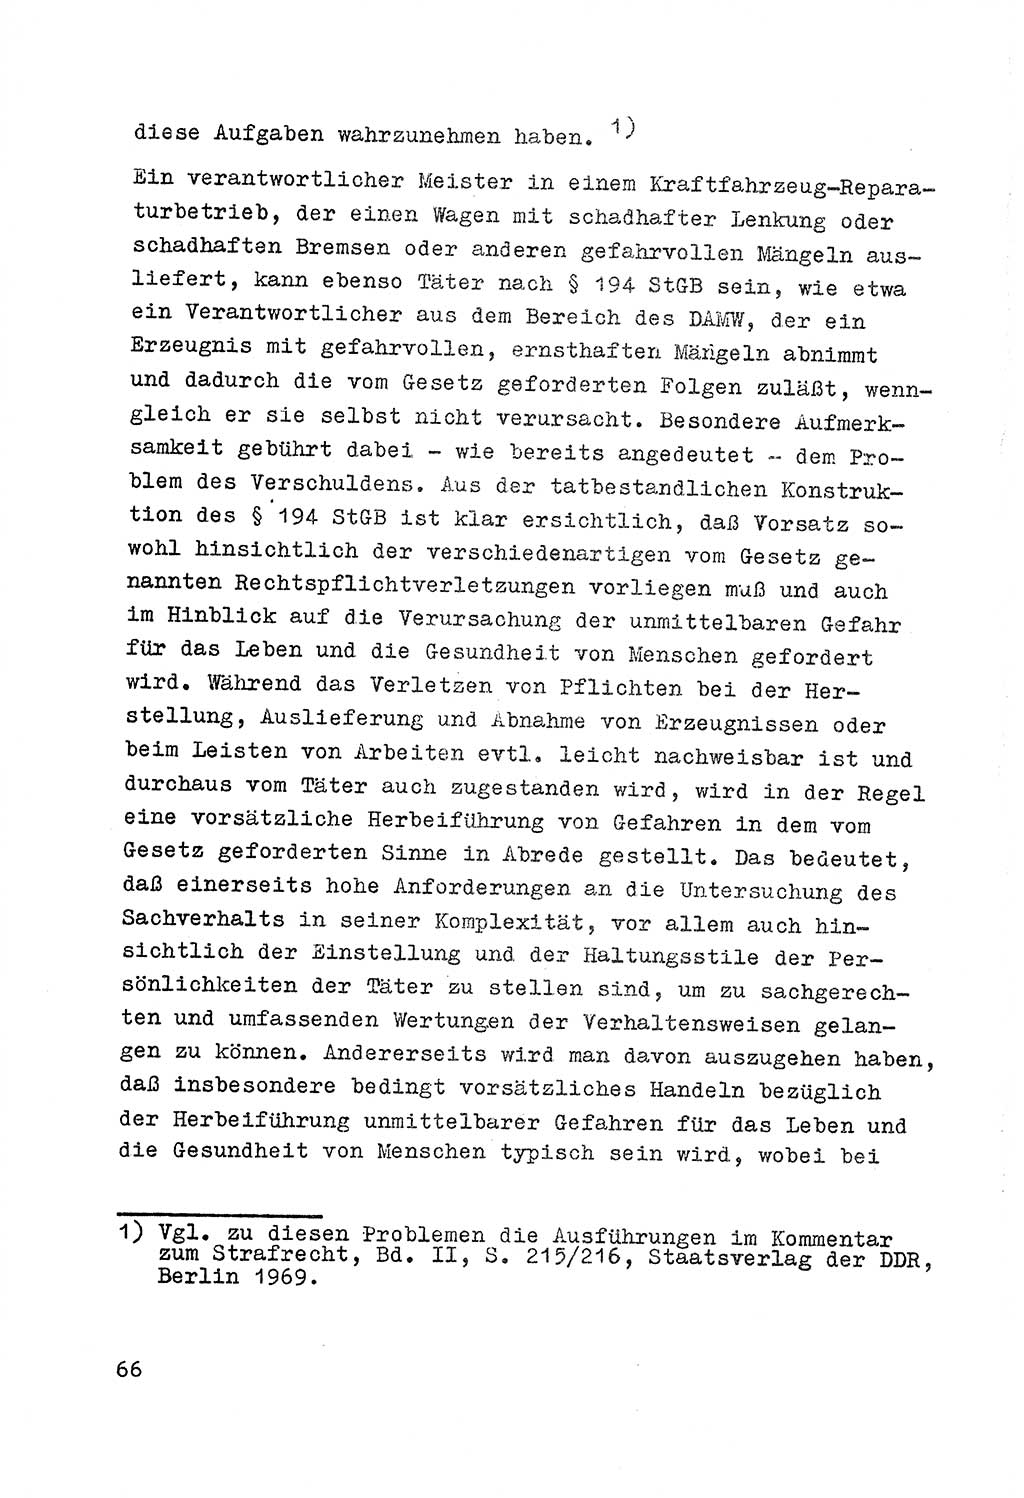 Strafrecht der DDR (Deutsche Demokratische Republik), Besonderer Teil, Lehrmaterial, Heft 7 1970, Seite 66 (Strafr. DDR BT Lehrmat. H. 7 1970, S. 66)